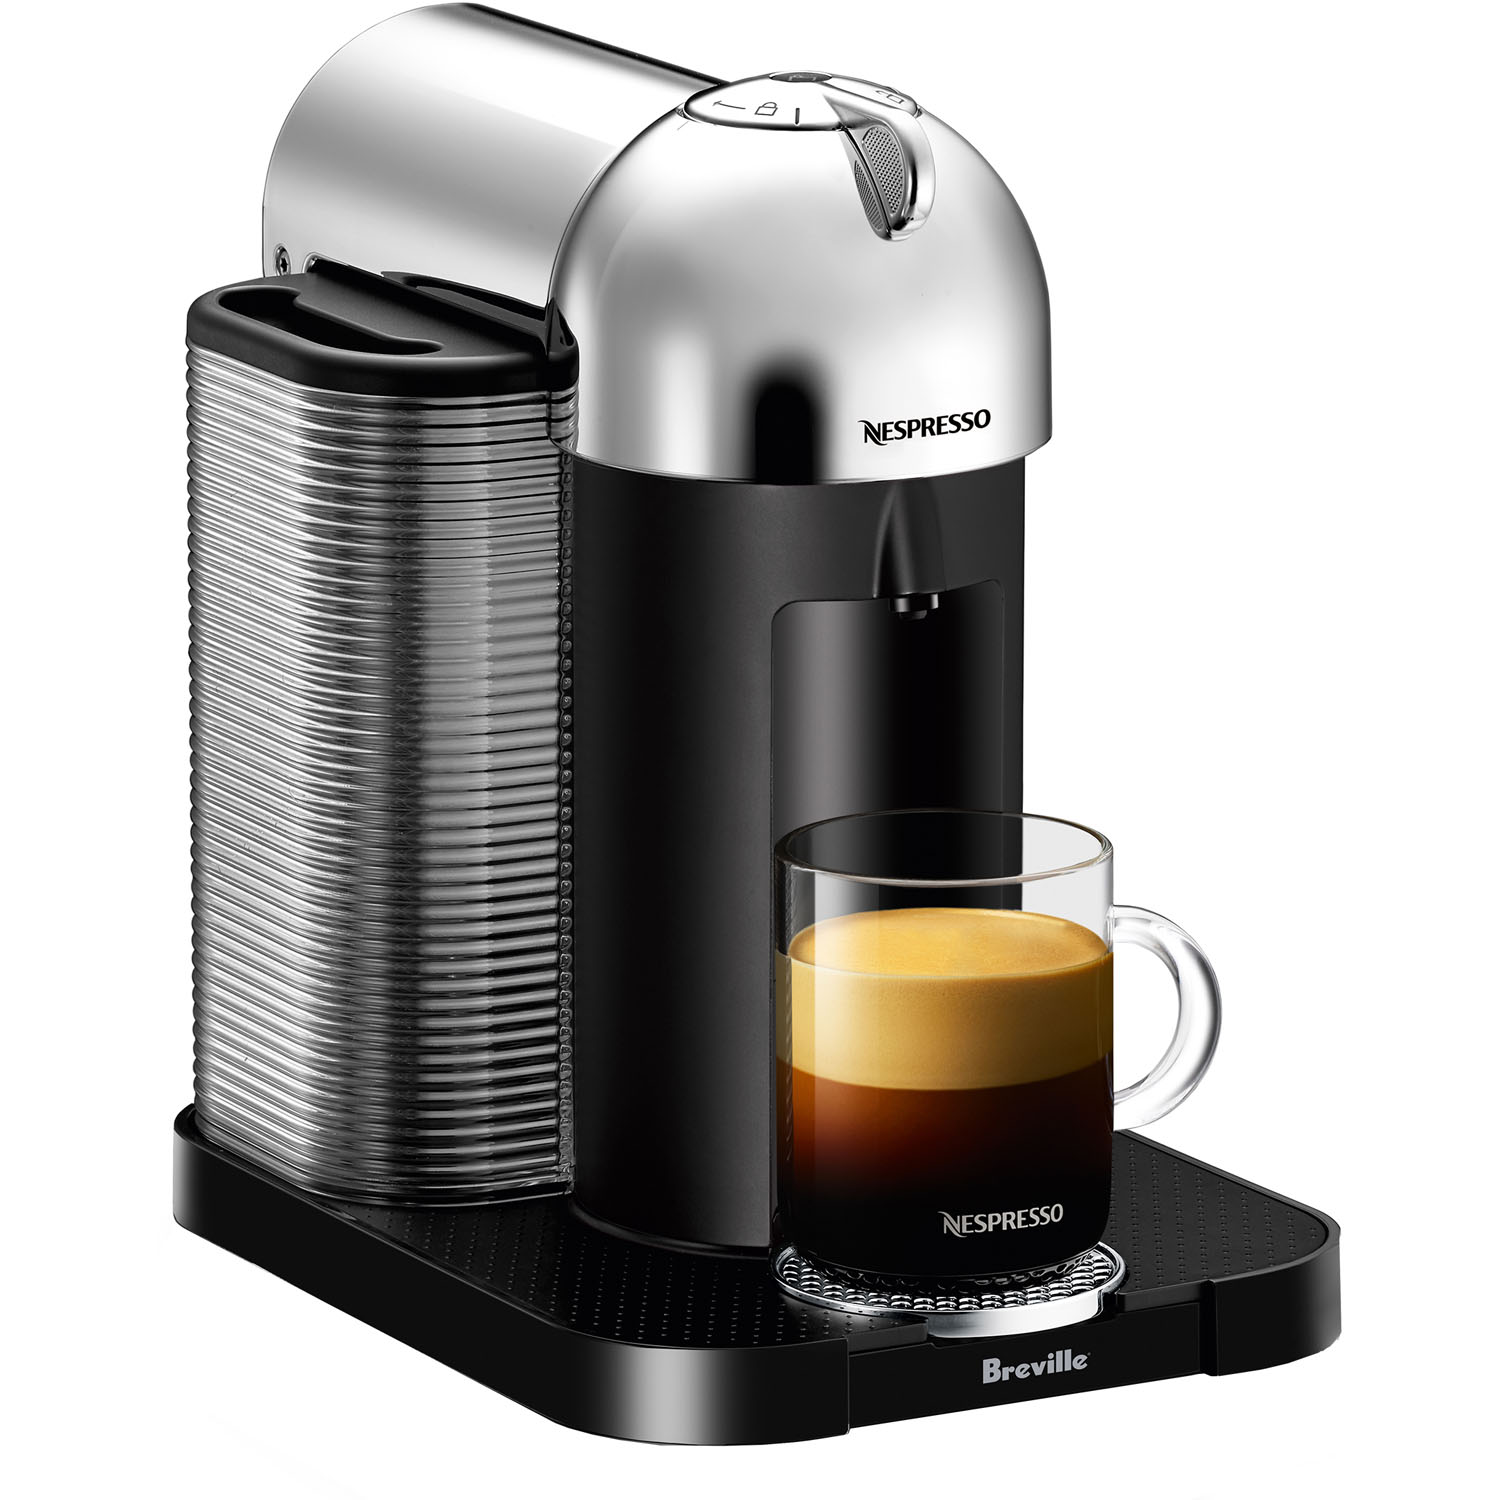 Breville Nespresso Vertuo Coffee & Espresso Single-Serve Machine in Chrome - image 2 of 9